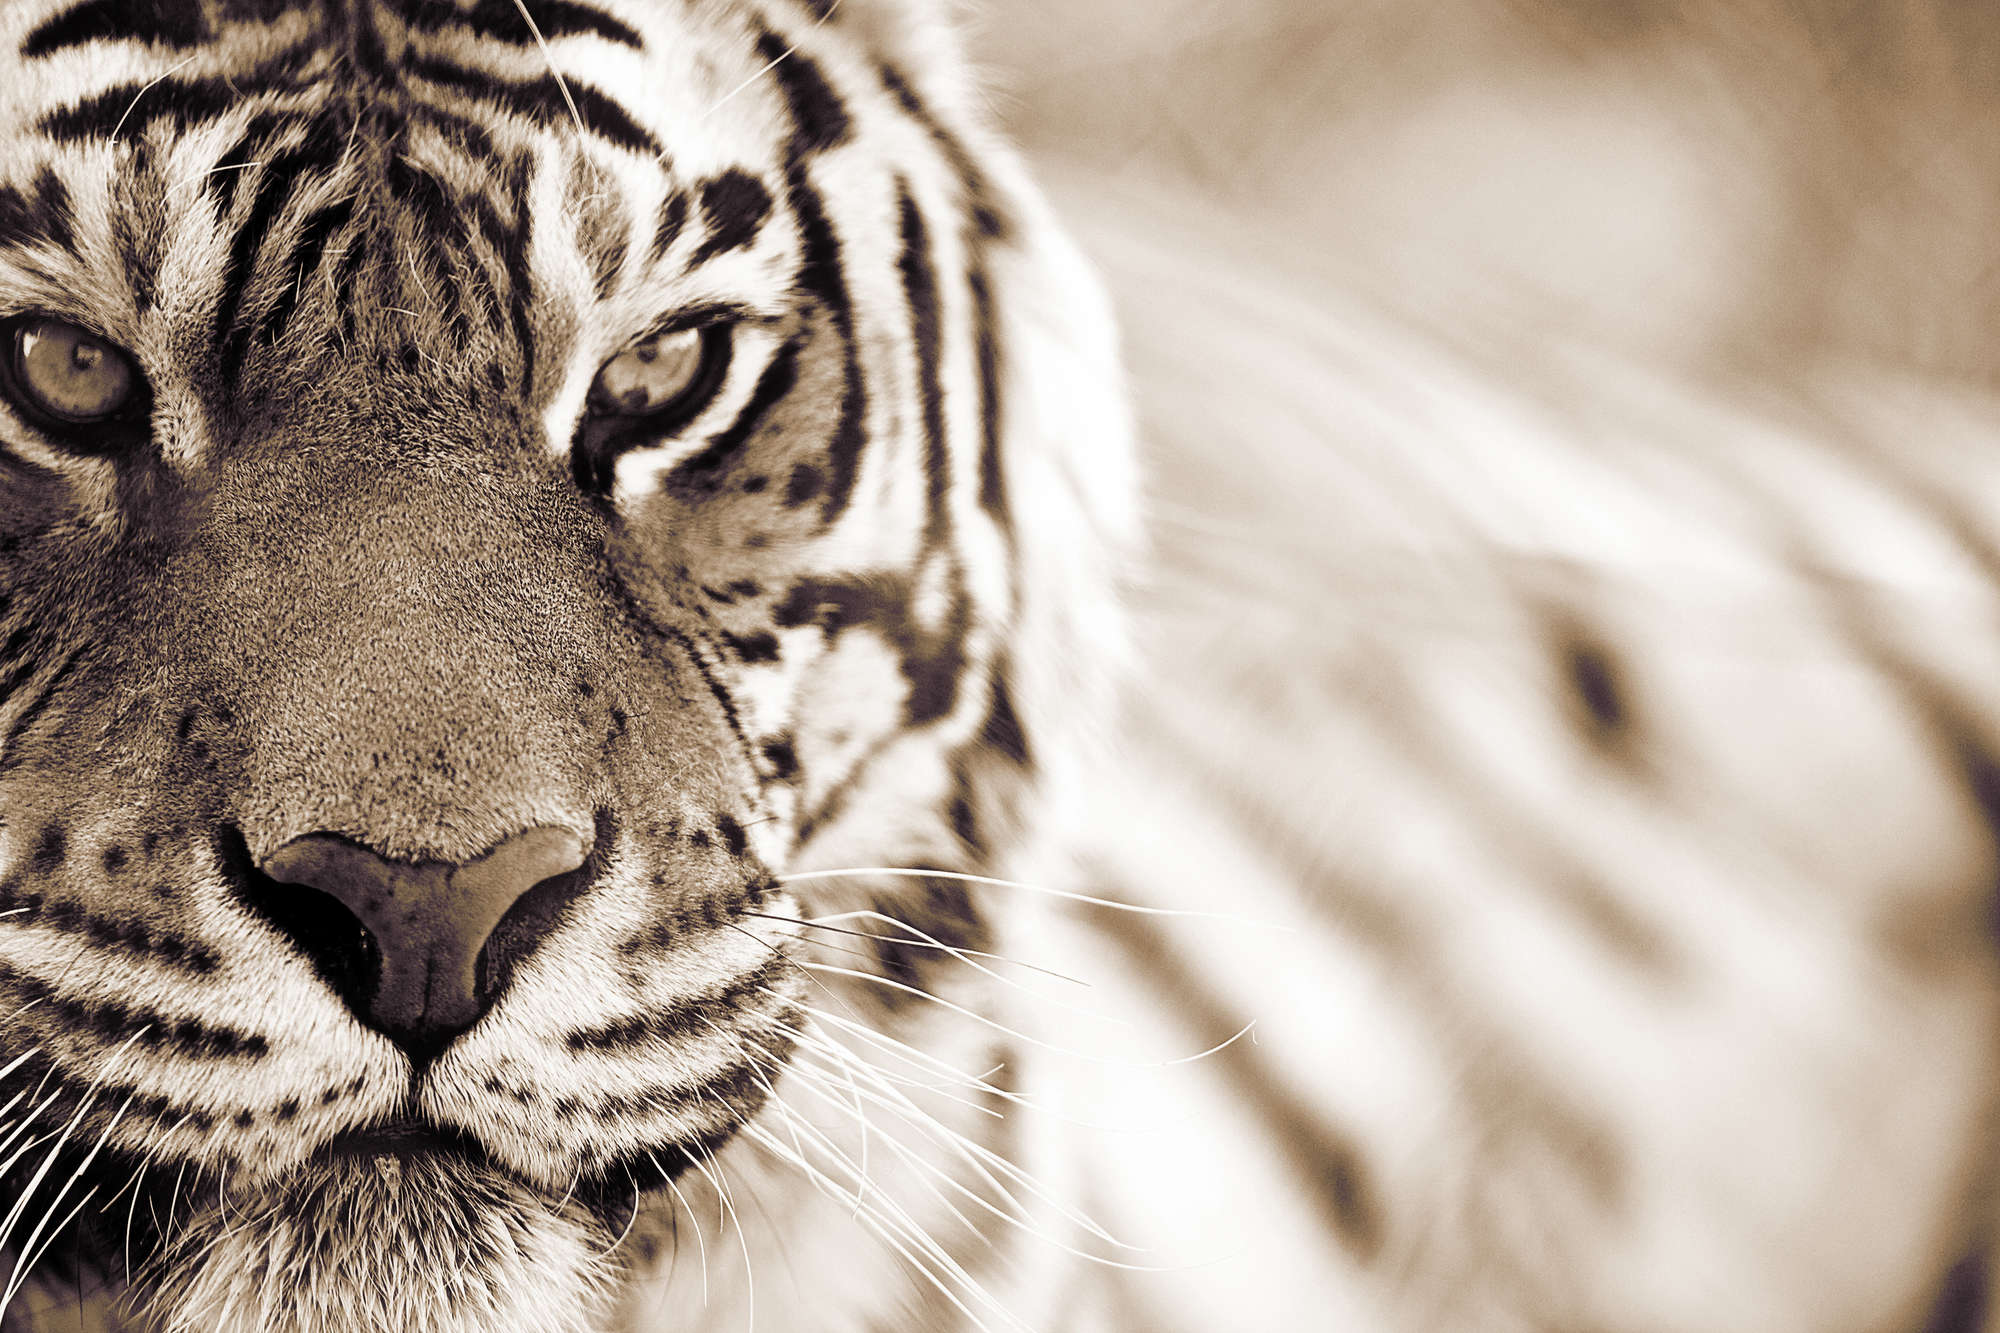             Papier peint panoramique tigre gros plan en extérieur sur intissé lisse nacré
        